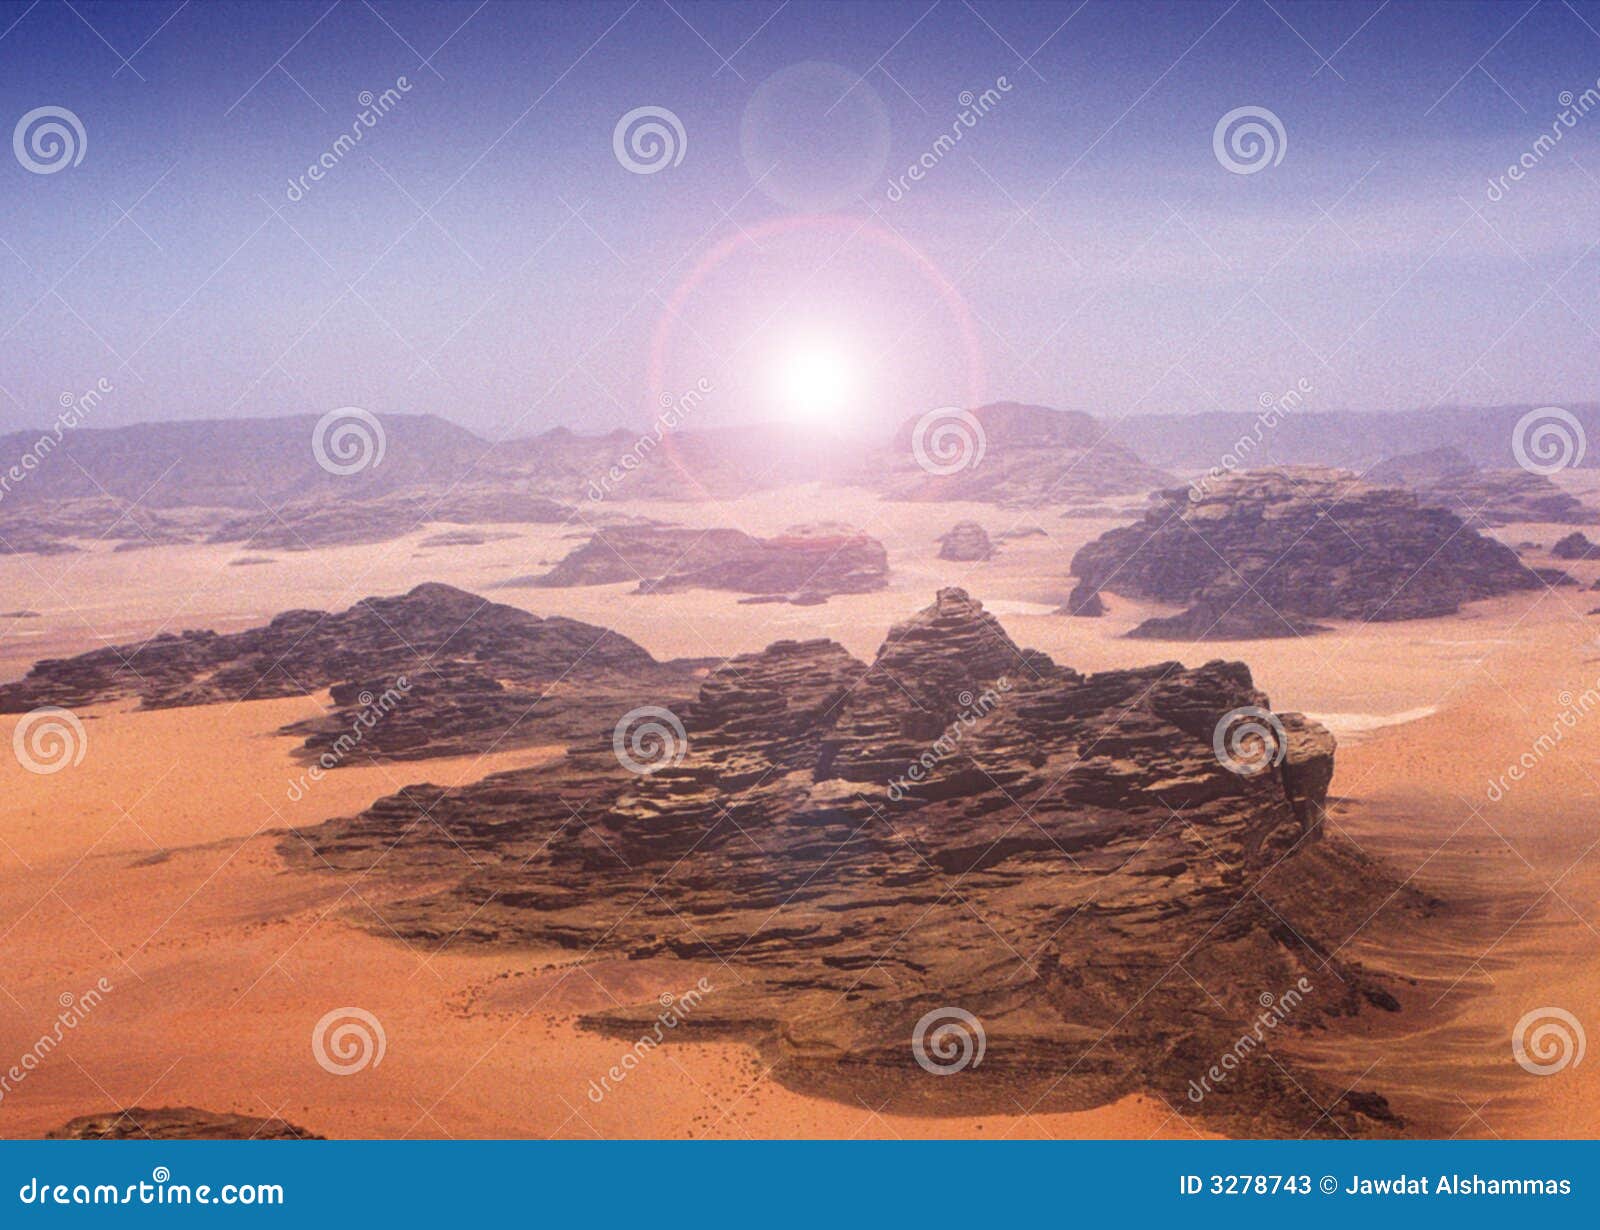 blazing sun across desert